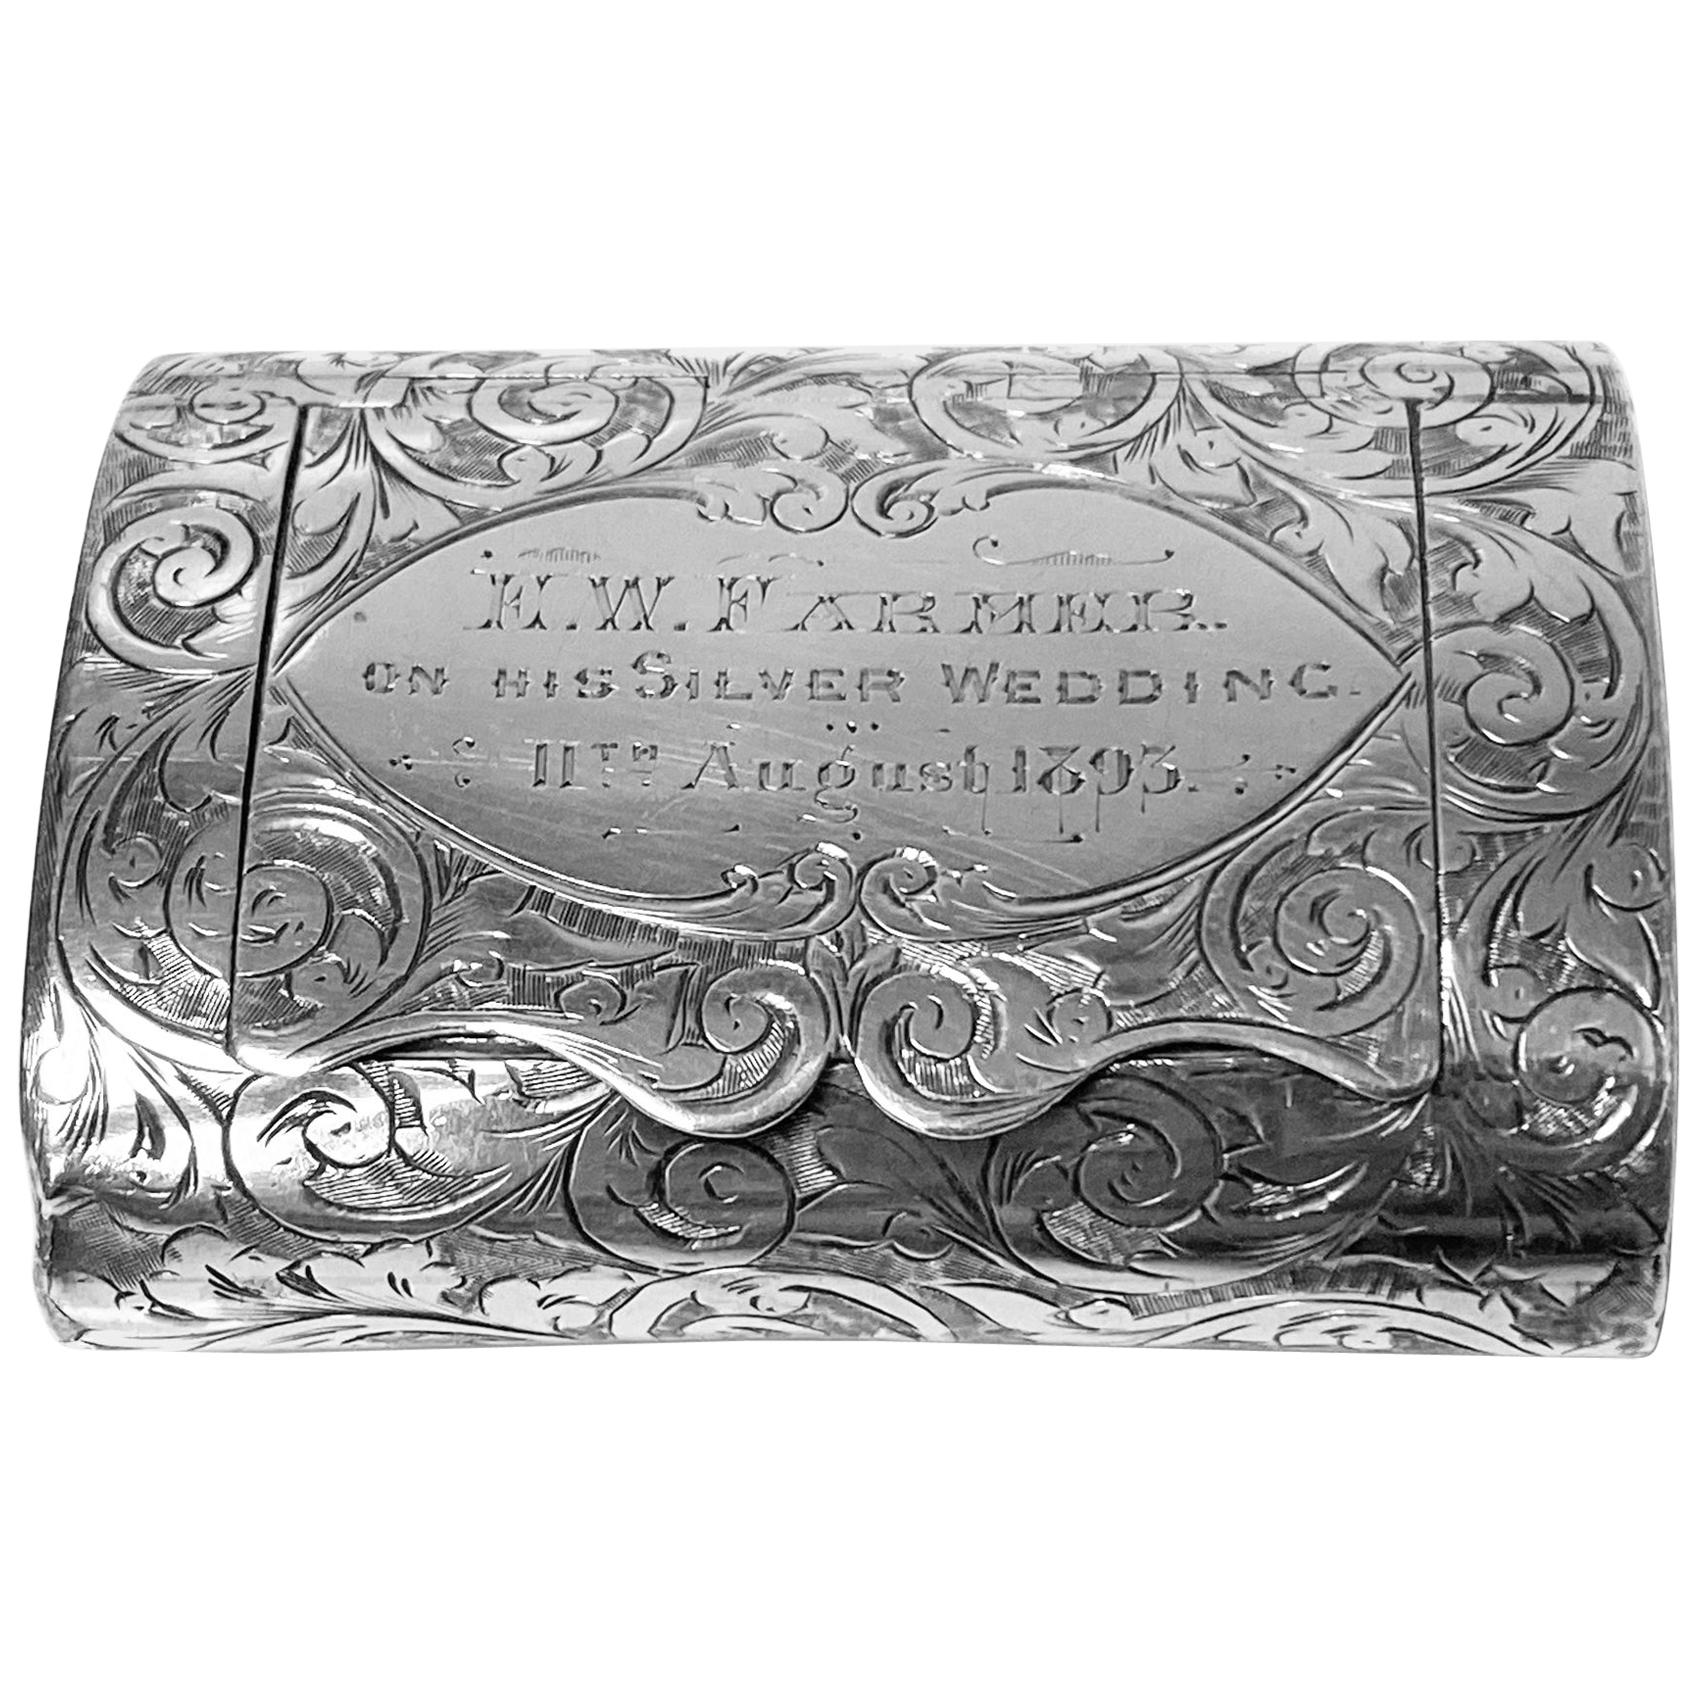 Rare Silver Vesta Case in form of clutch Purse Birmingham 1892 Thomas Hayes